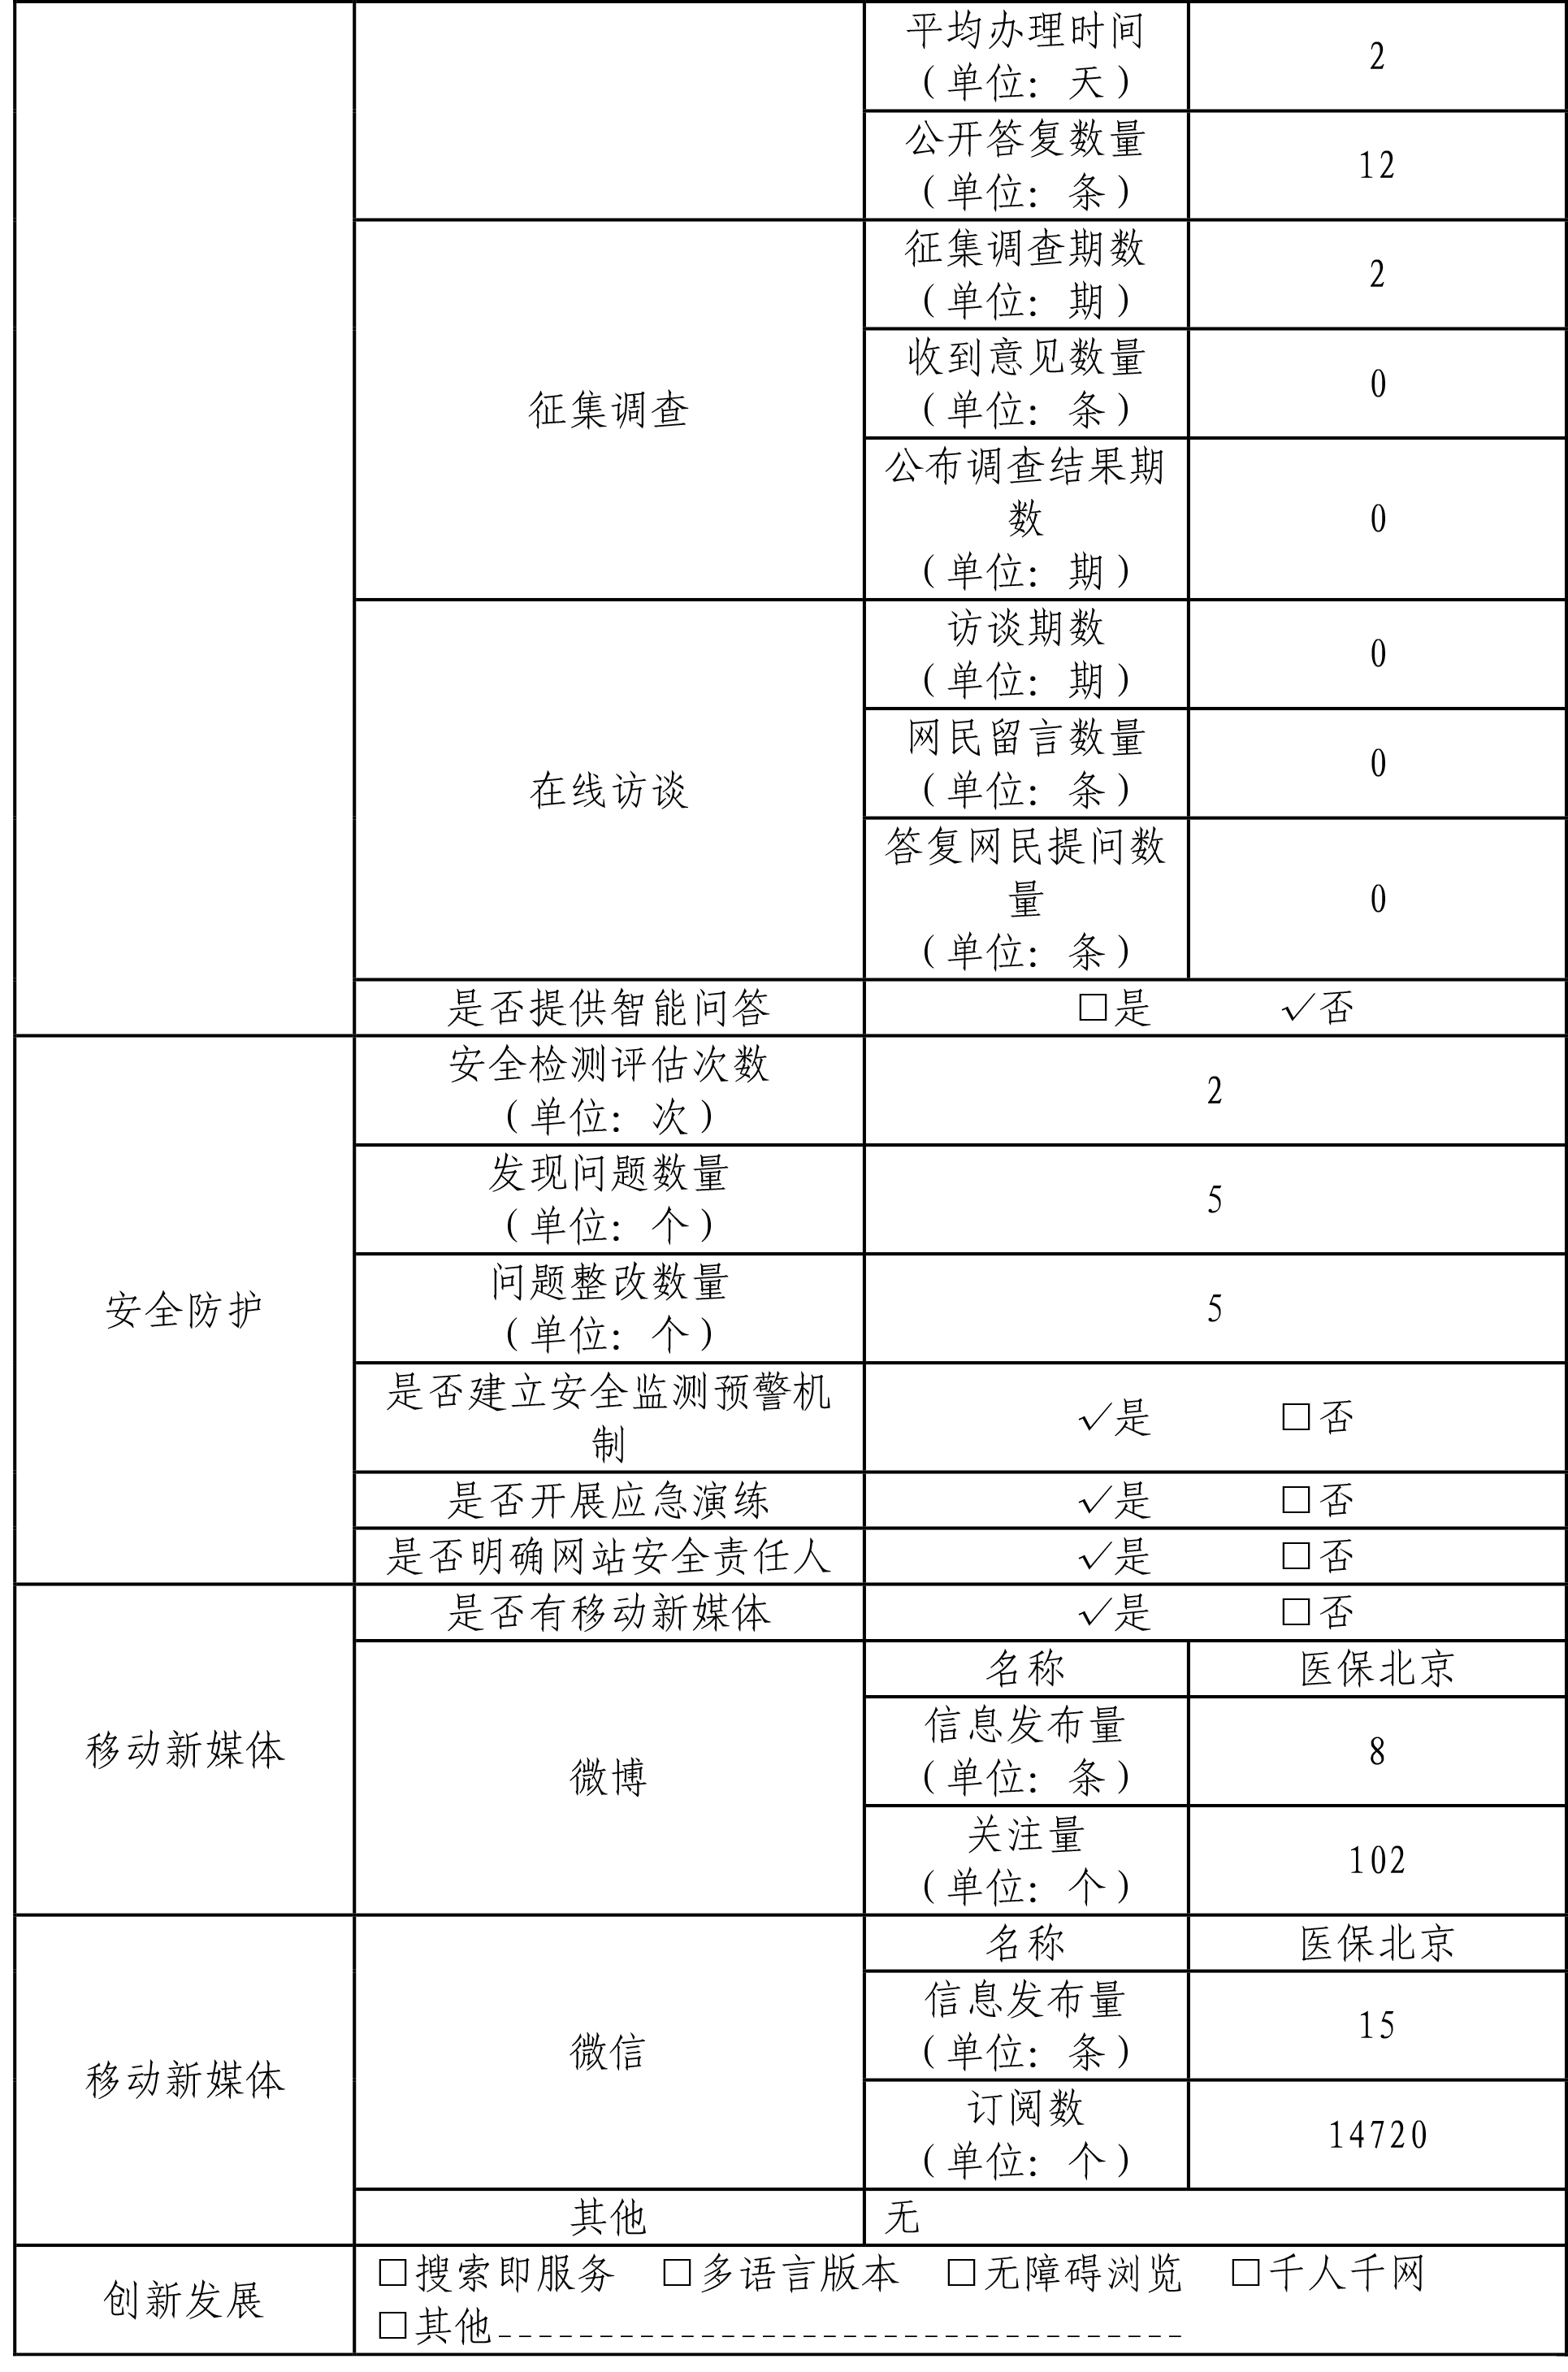 北京市醫療保障局2019年政府網站年度工作報表